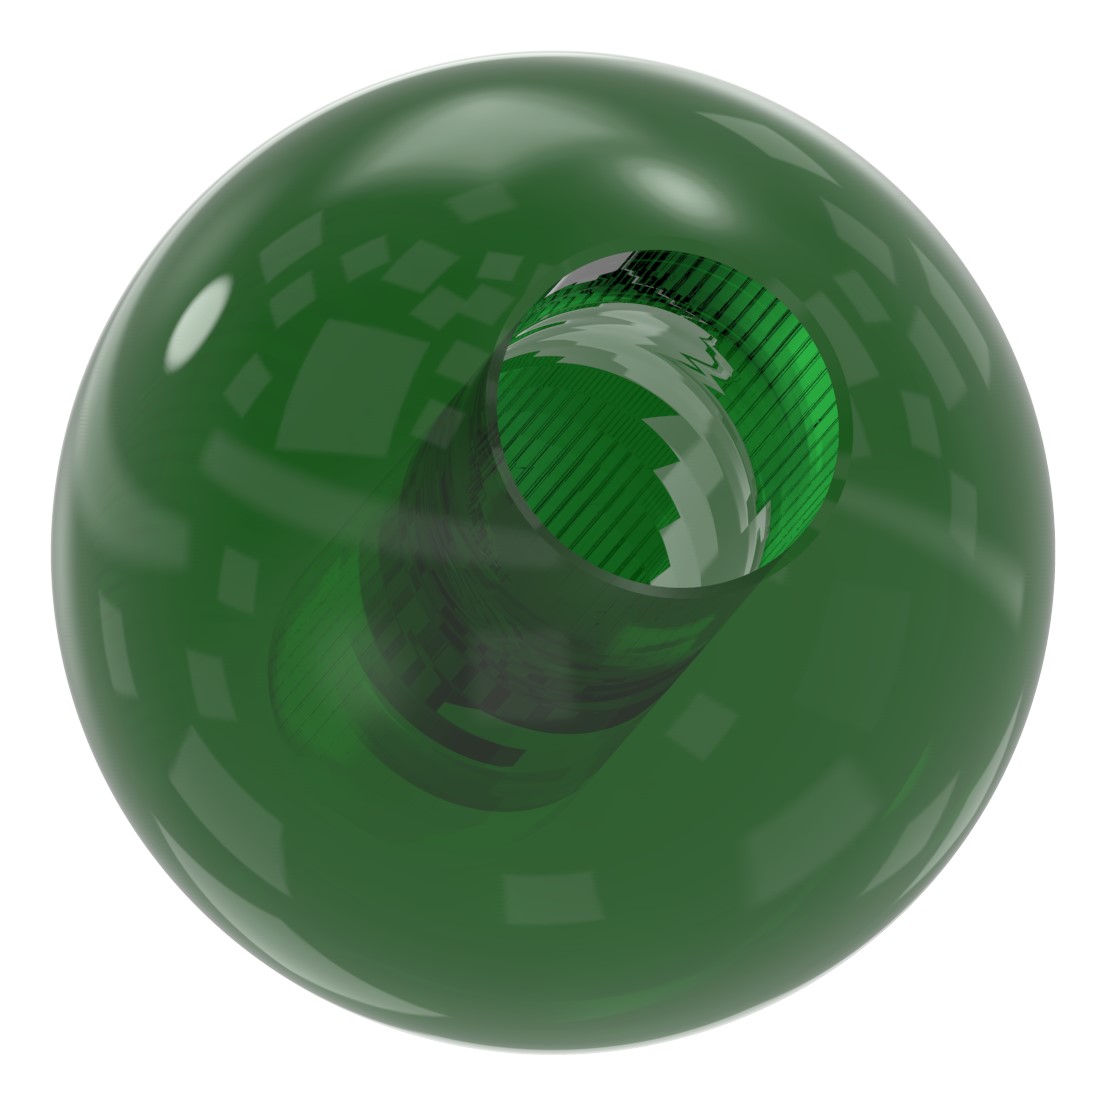 Glaskugel grün Ø 35mm mit Durchgangsbohrung 12,3mm